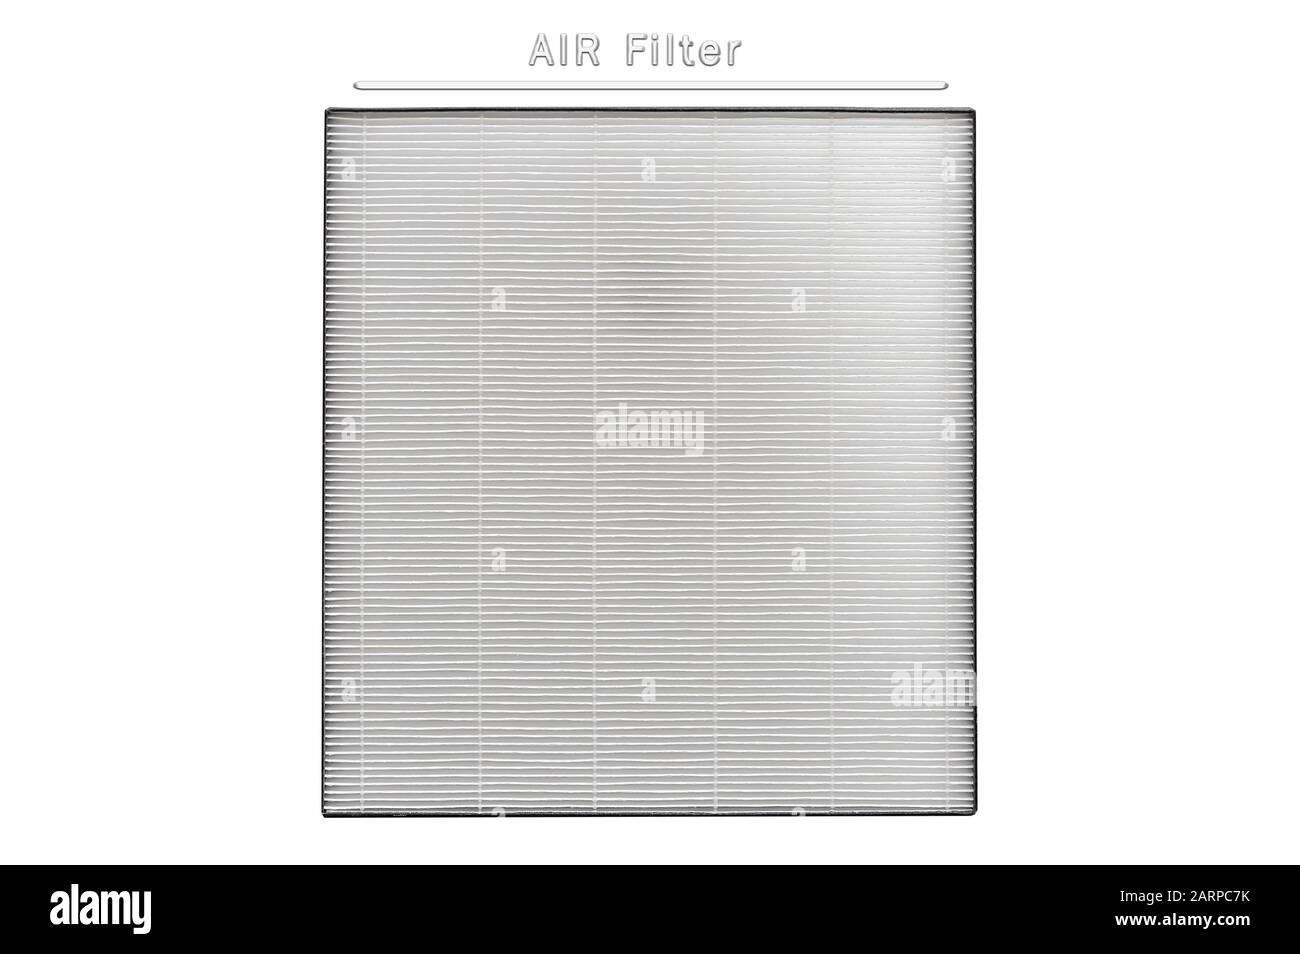 Filtre à air, filtre de purificateur d'air neuf pour isolation de remplacement sur fond blanc Banque D'Images